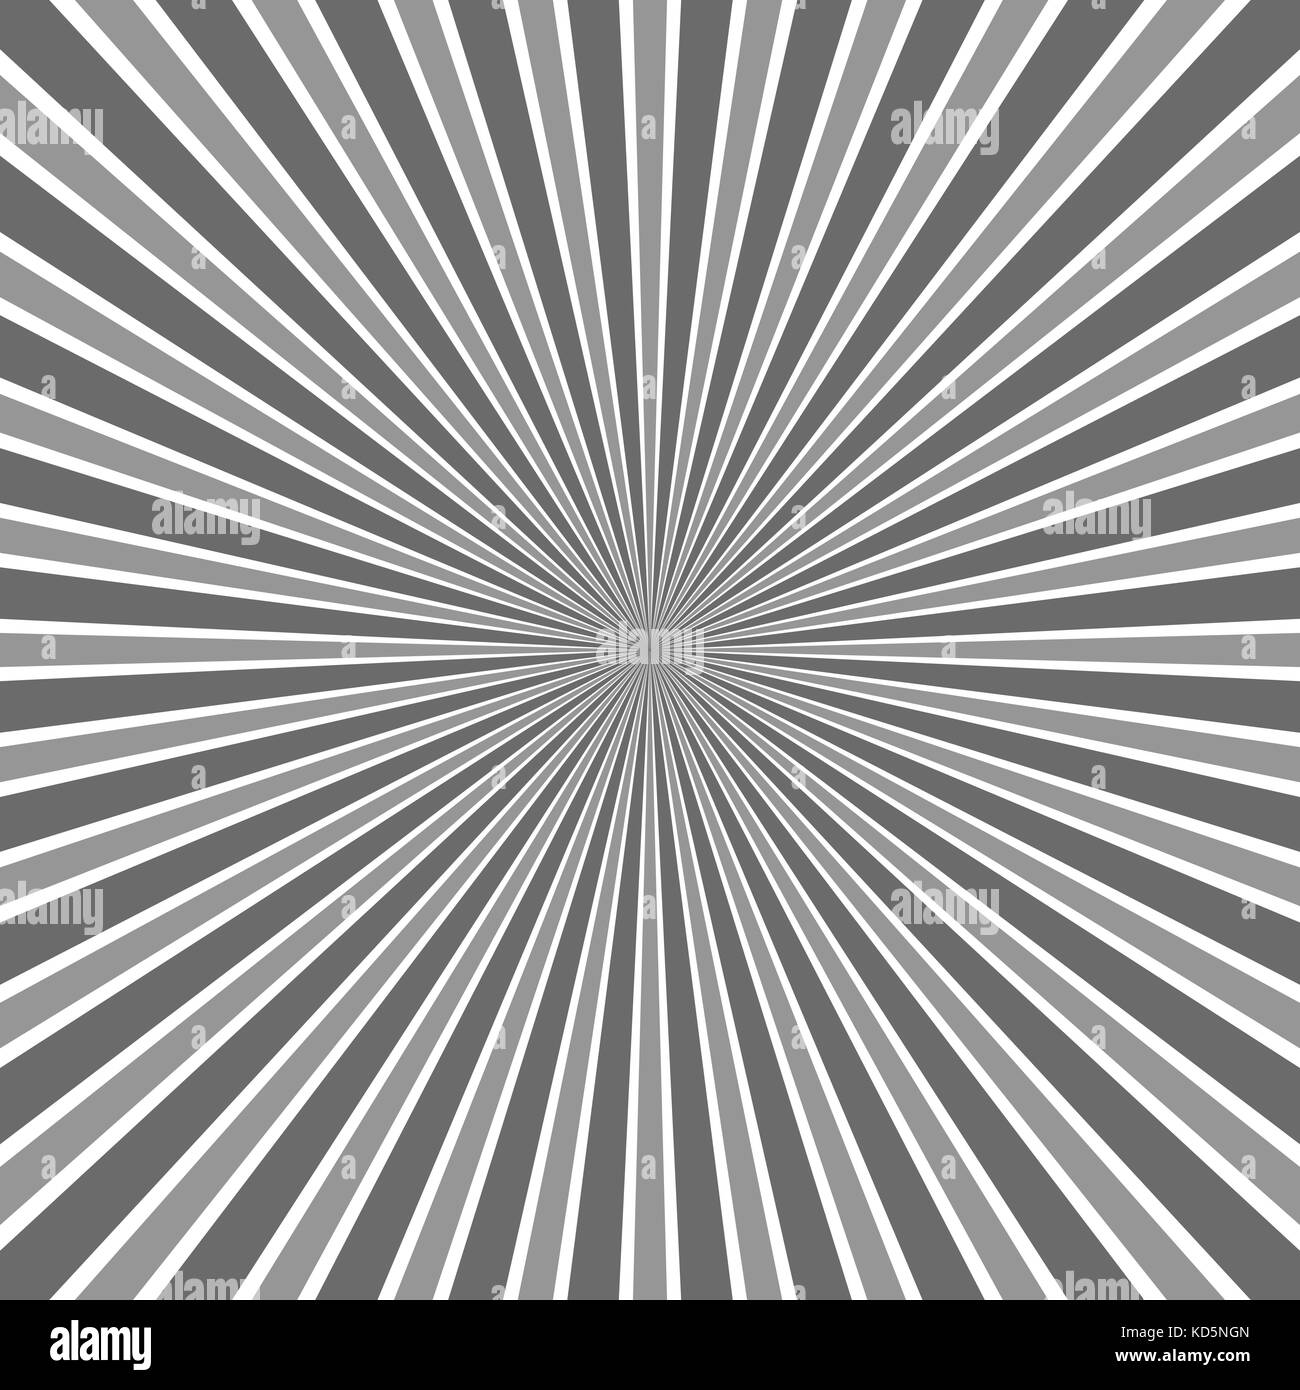 Astratta geometrica esplosione sfondo - fumetti grafica vettoriale con linee radiali Illustrazione Vettoriale